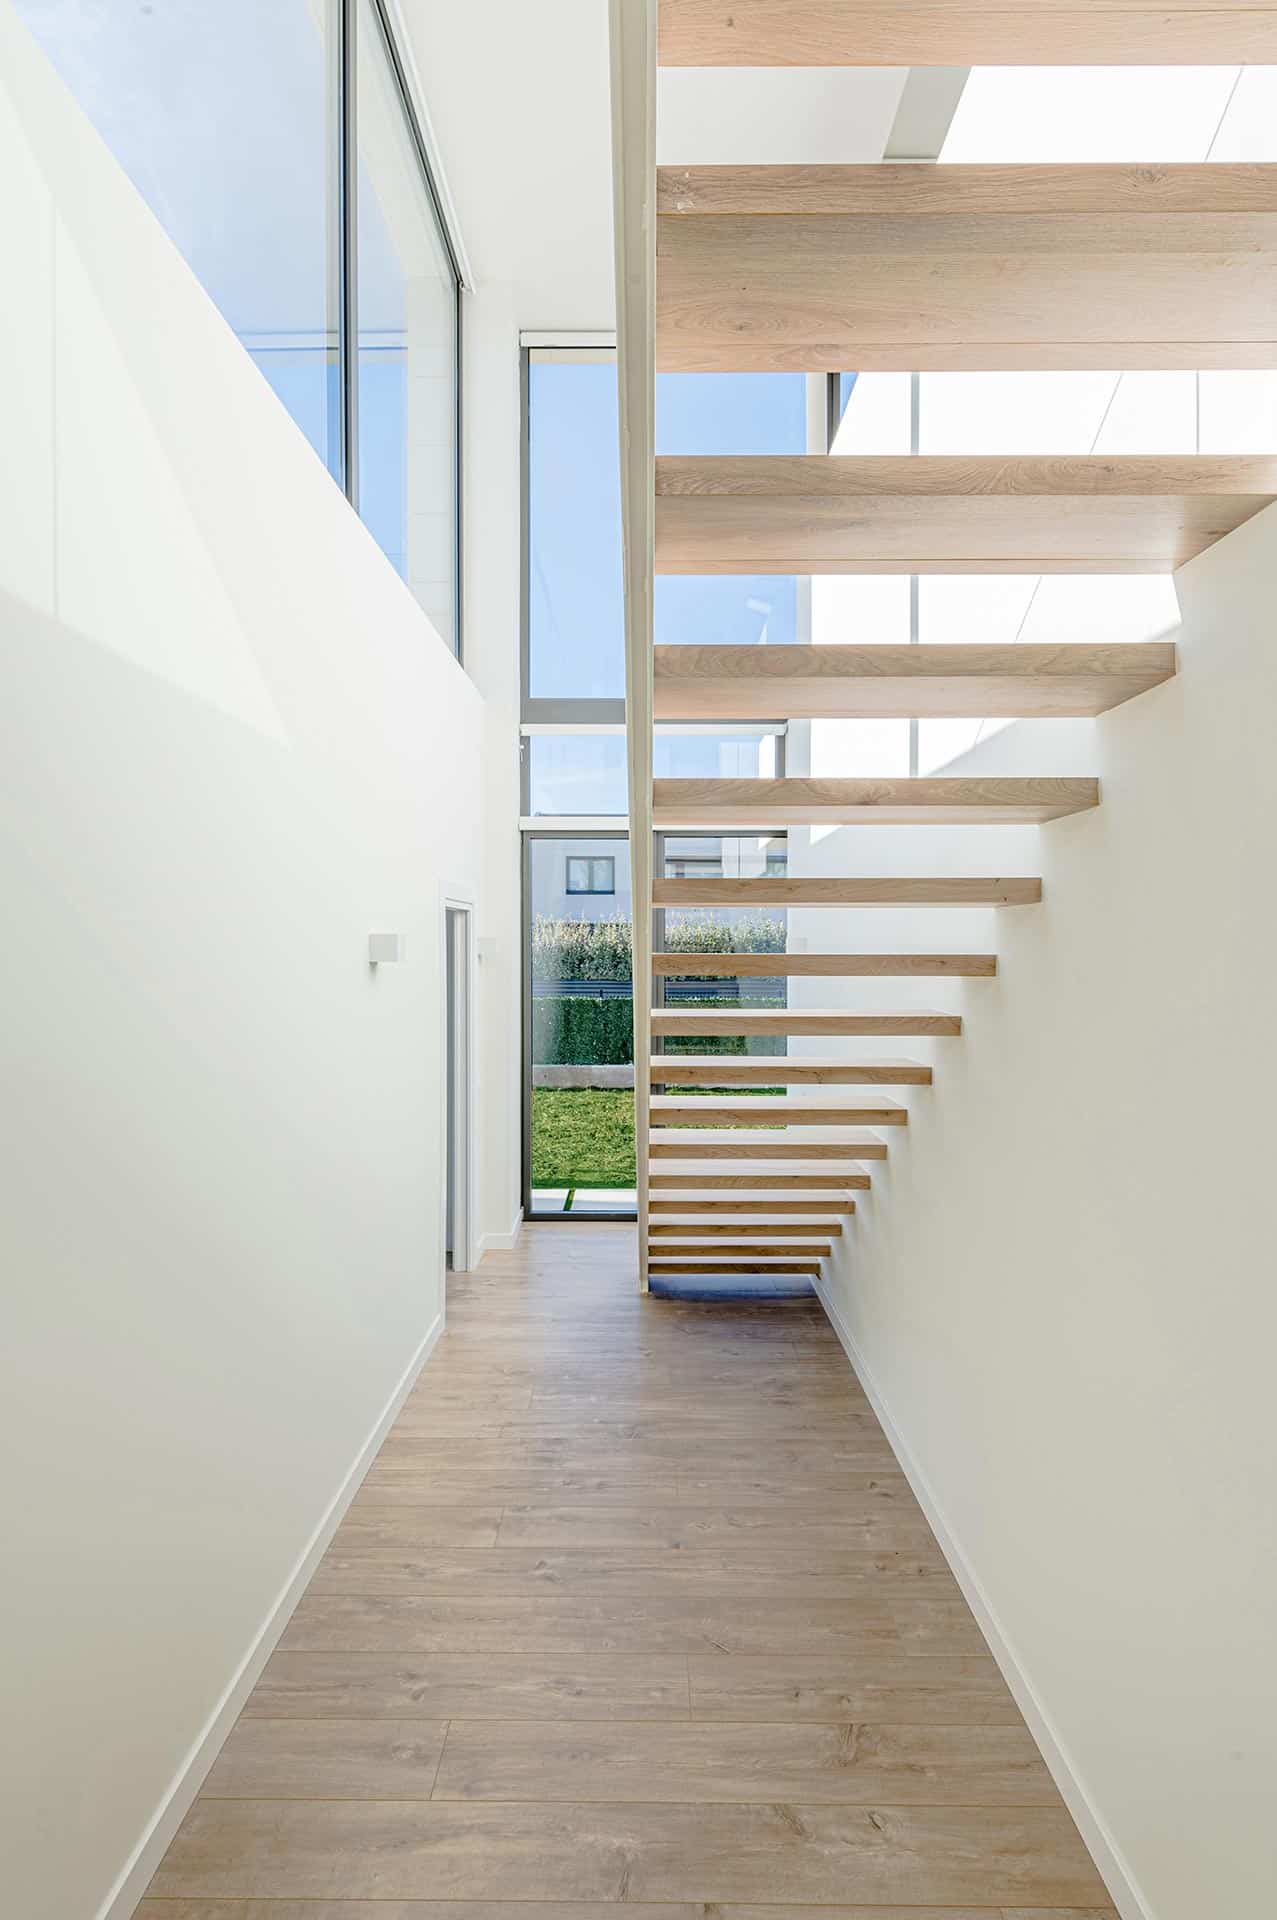 Escalera de madera ligera en vivienda moderna diseñada por Moah Arquitectos en Piélagos. Cantabria